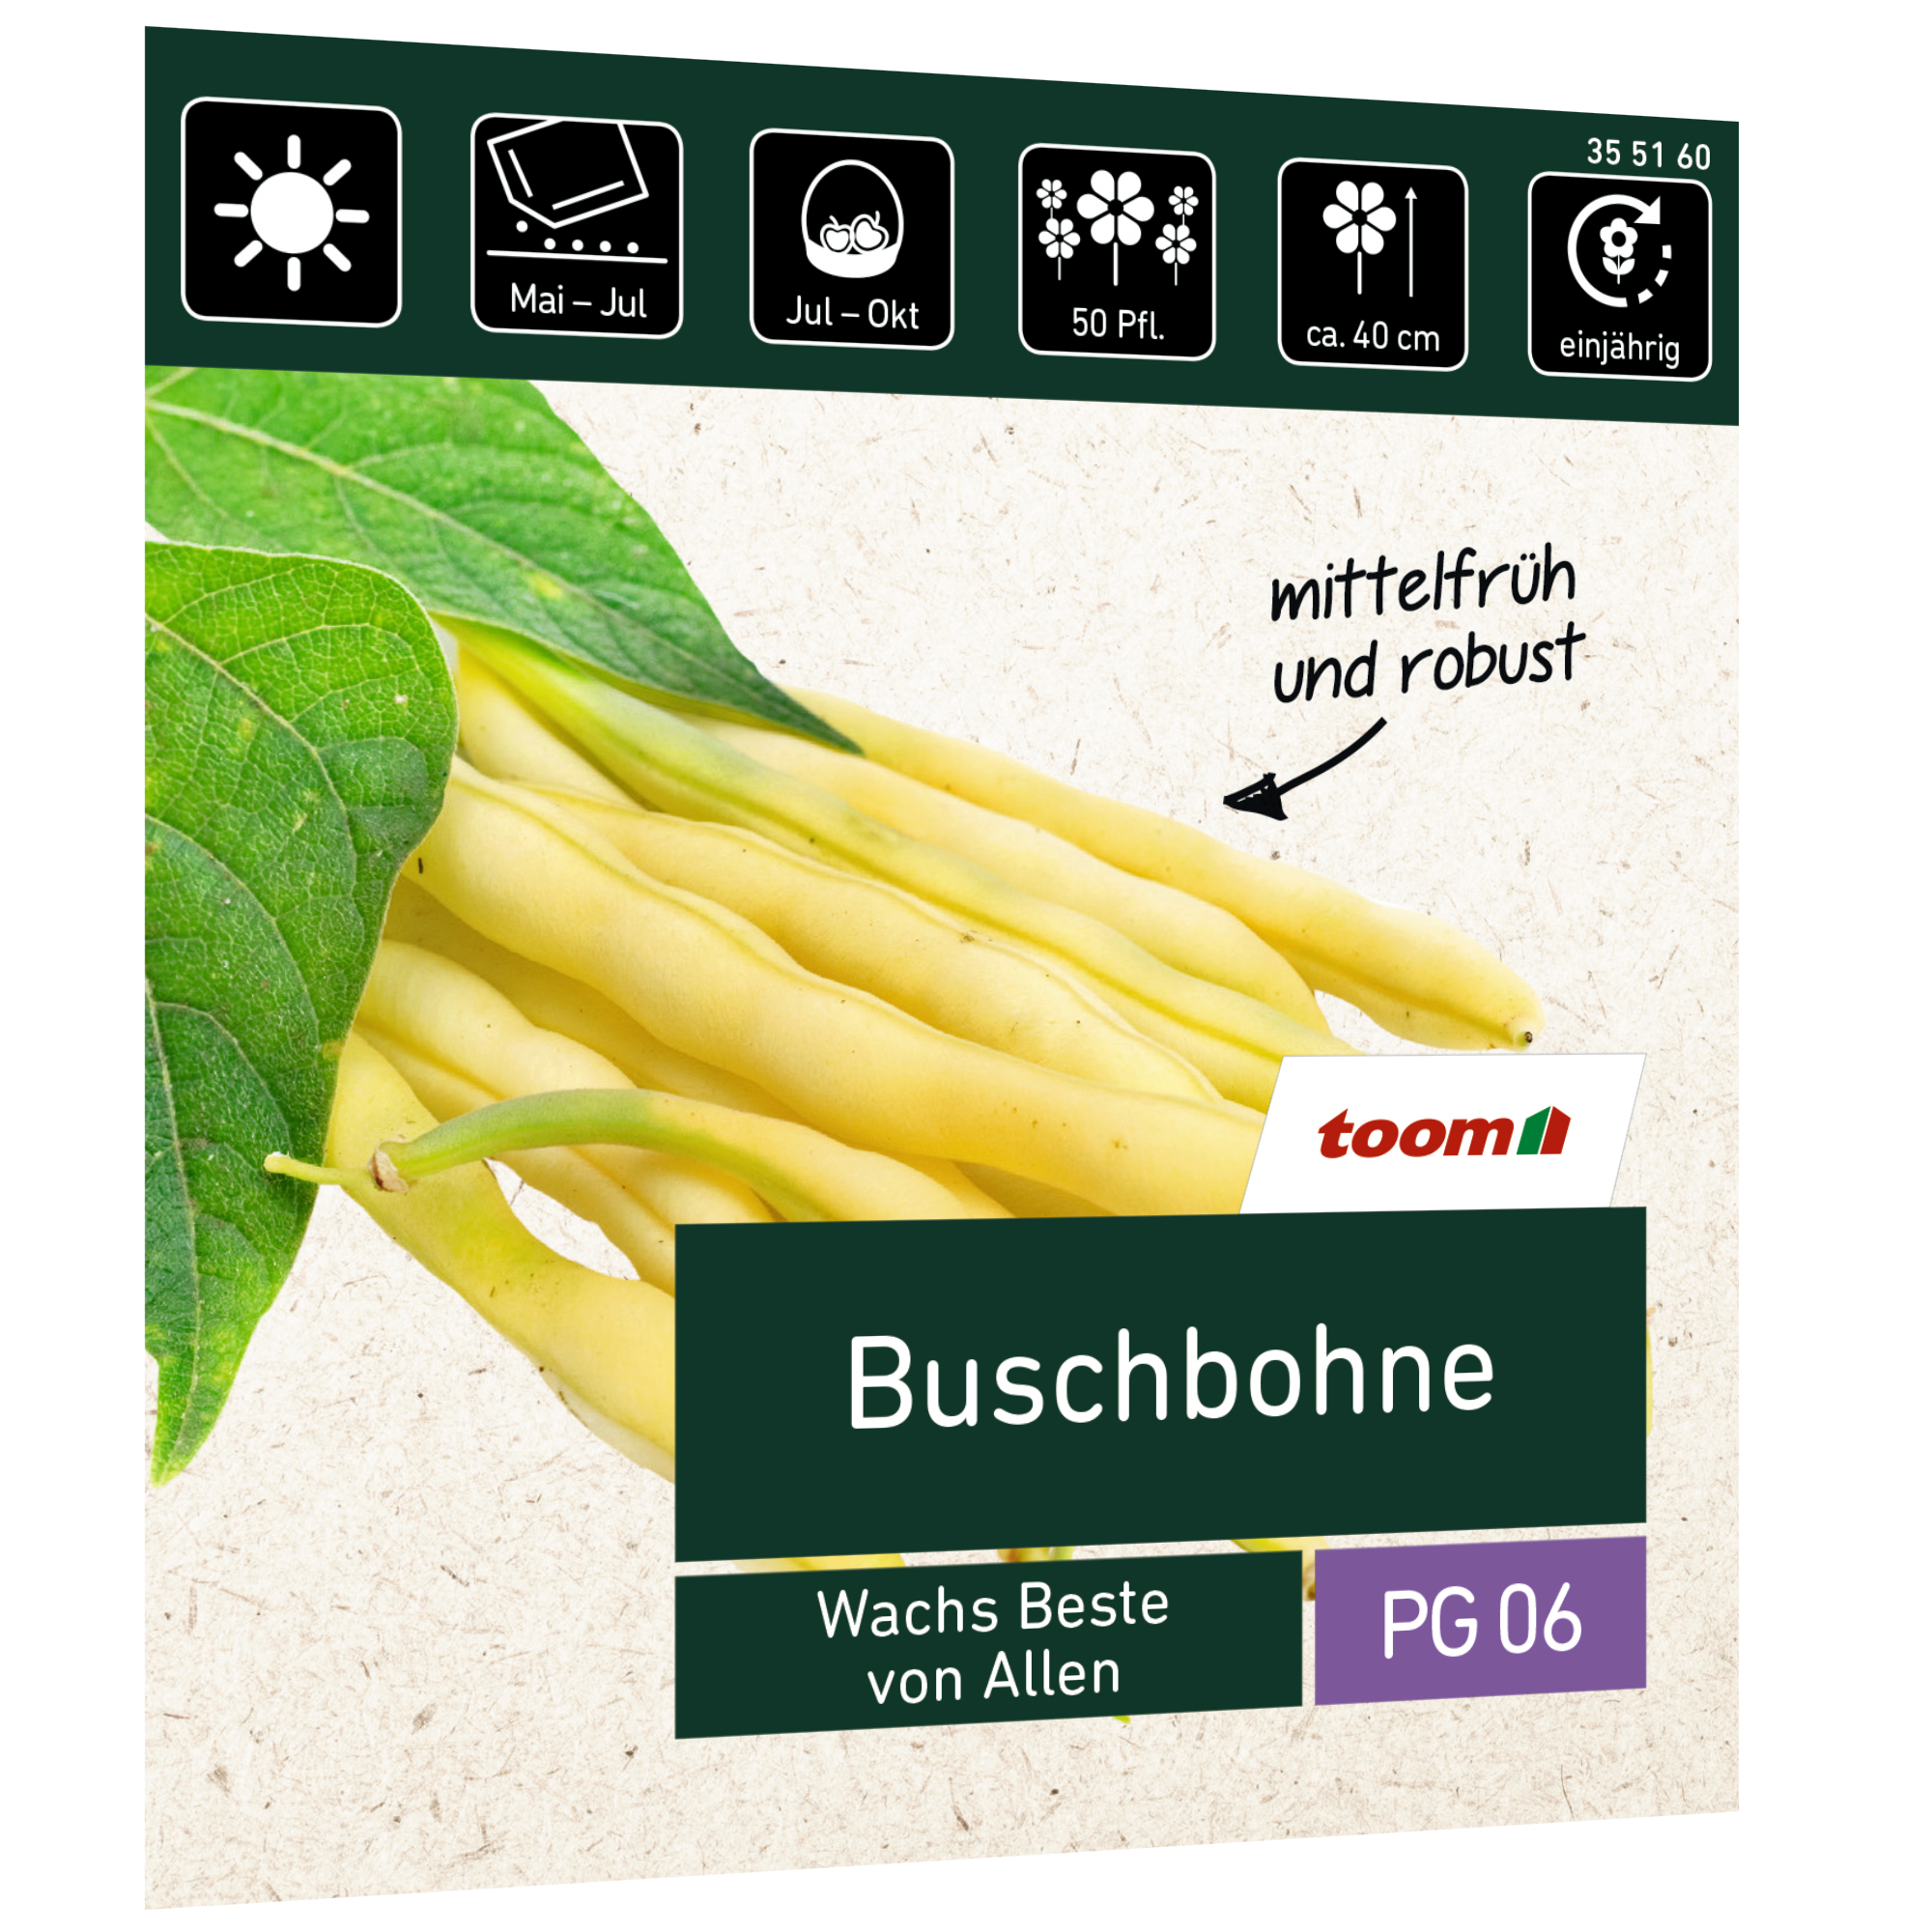 Buschbohne 'Wachs Beste von Allen' + product picture